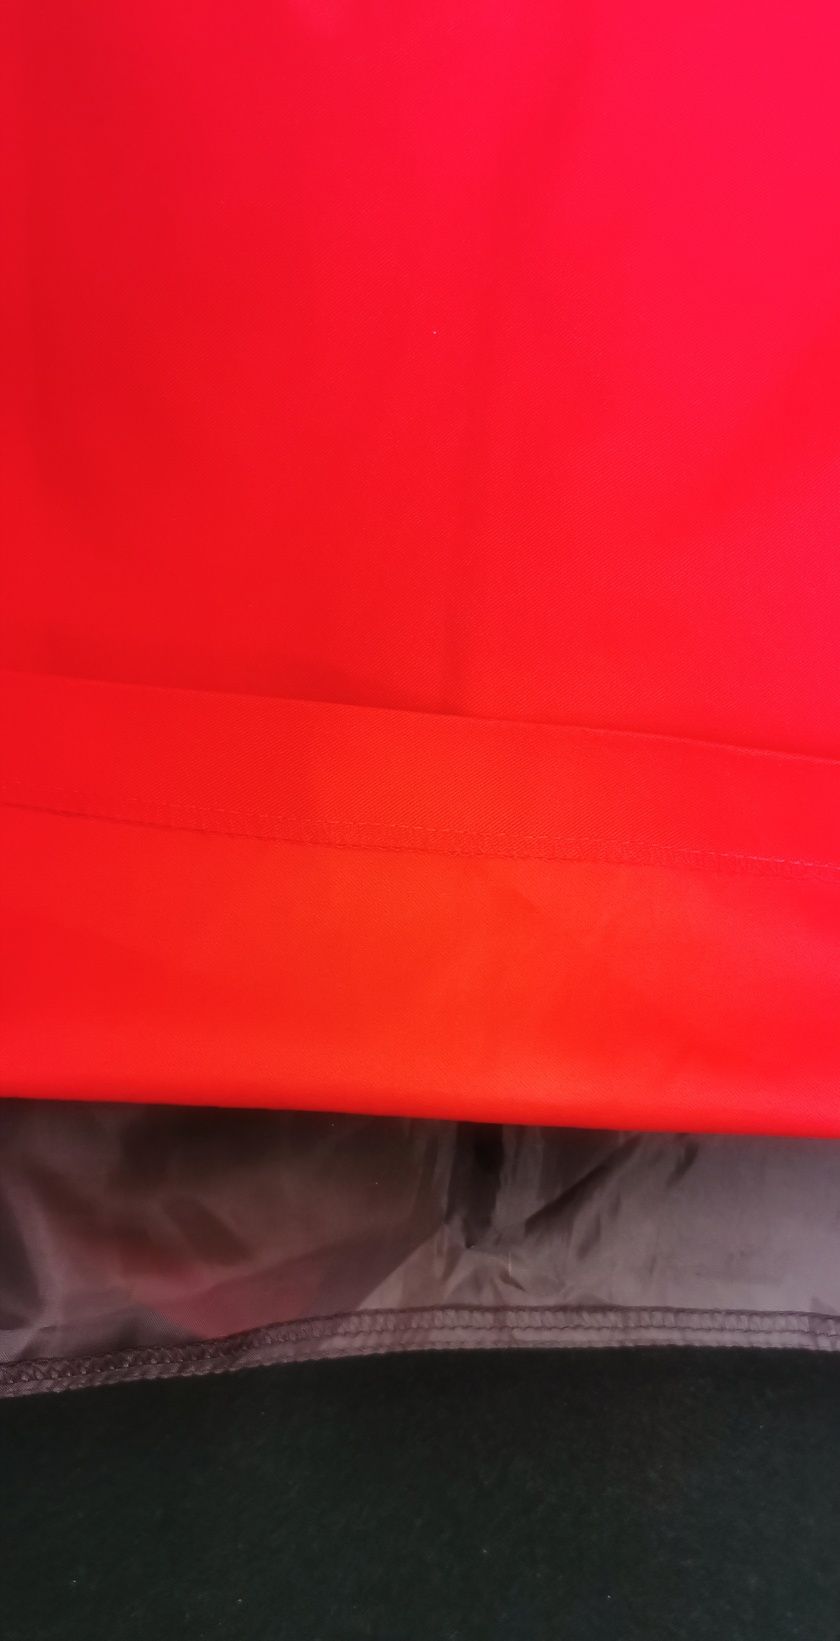 Spódnica czerwona, ołówkowa, roz. 34 firma Margo